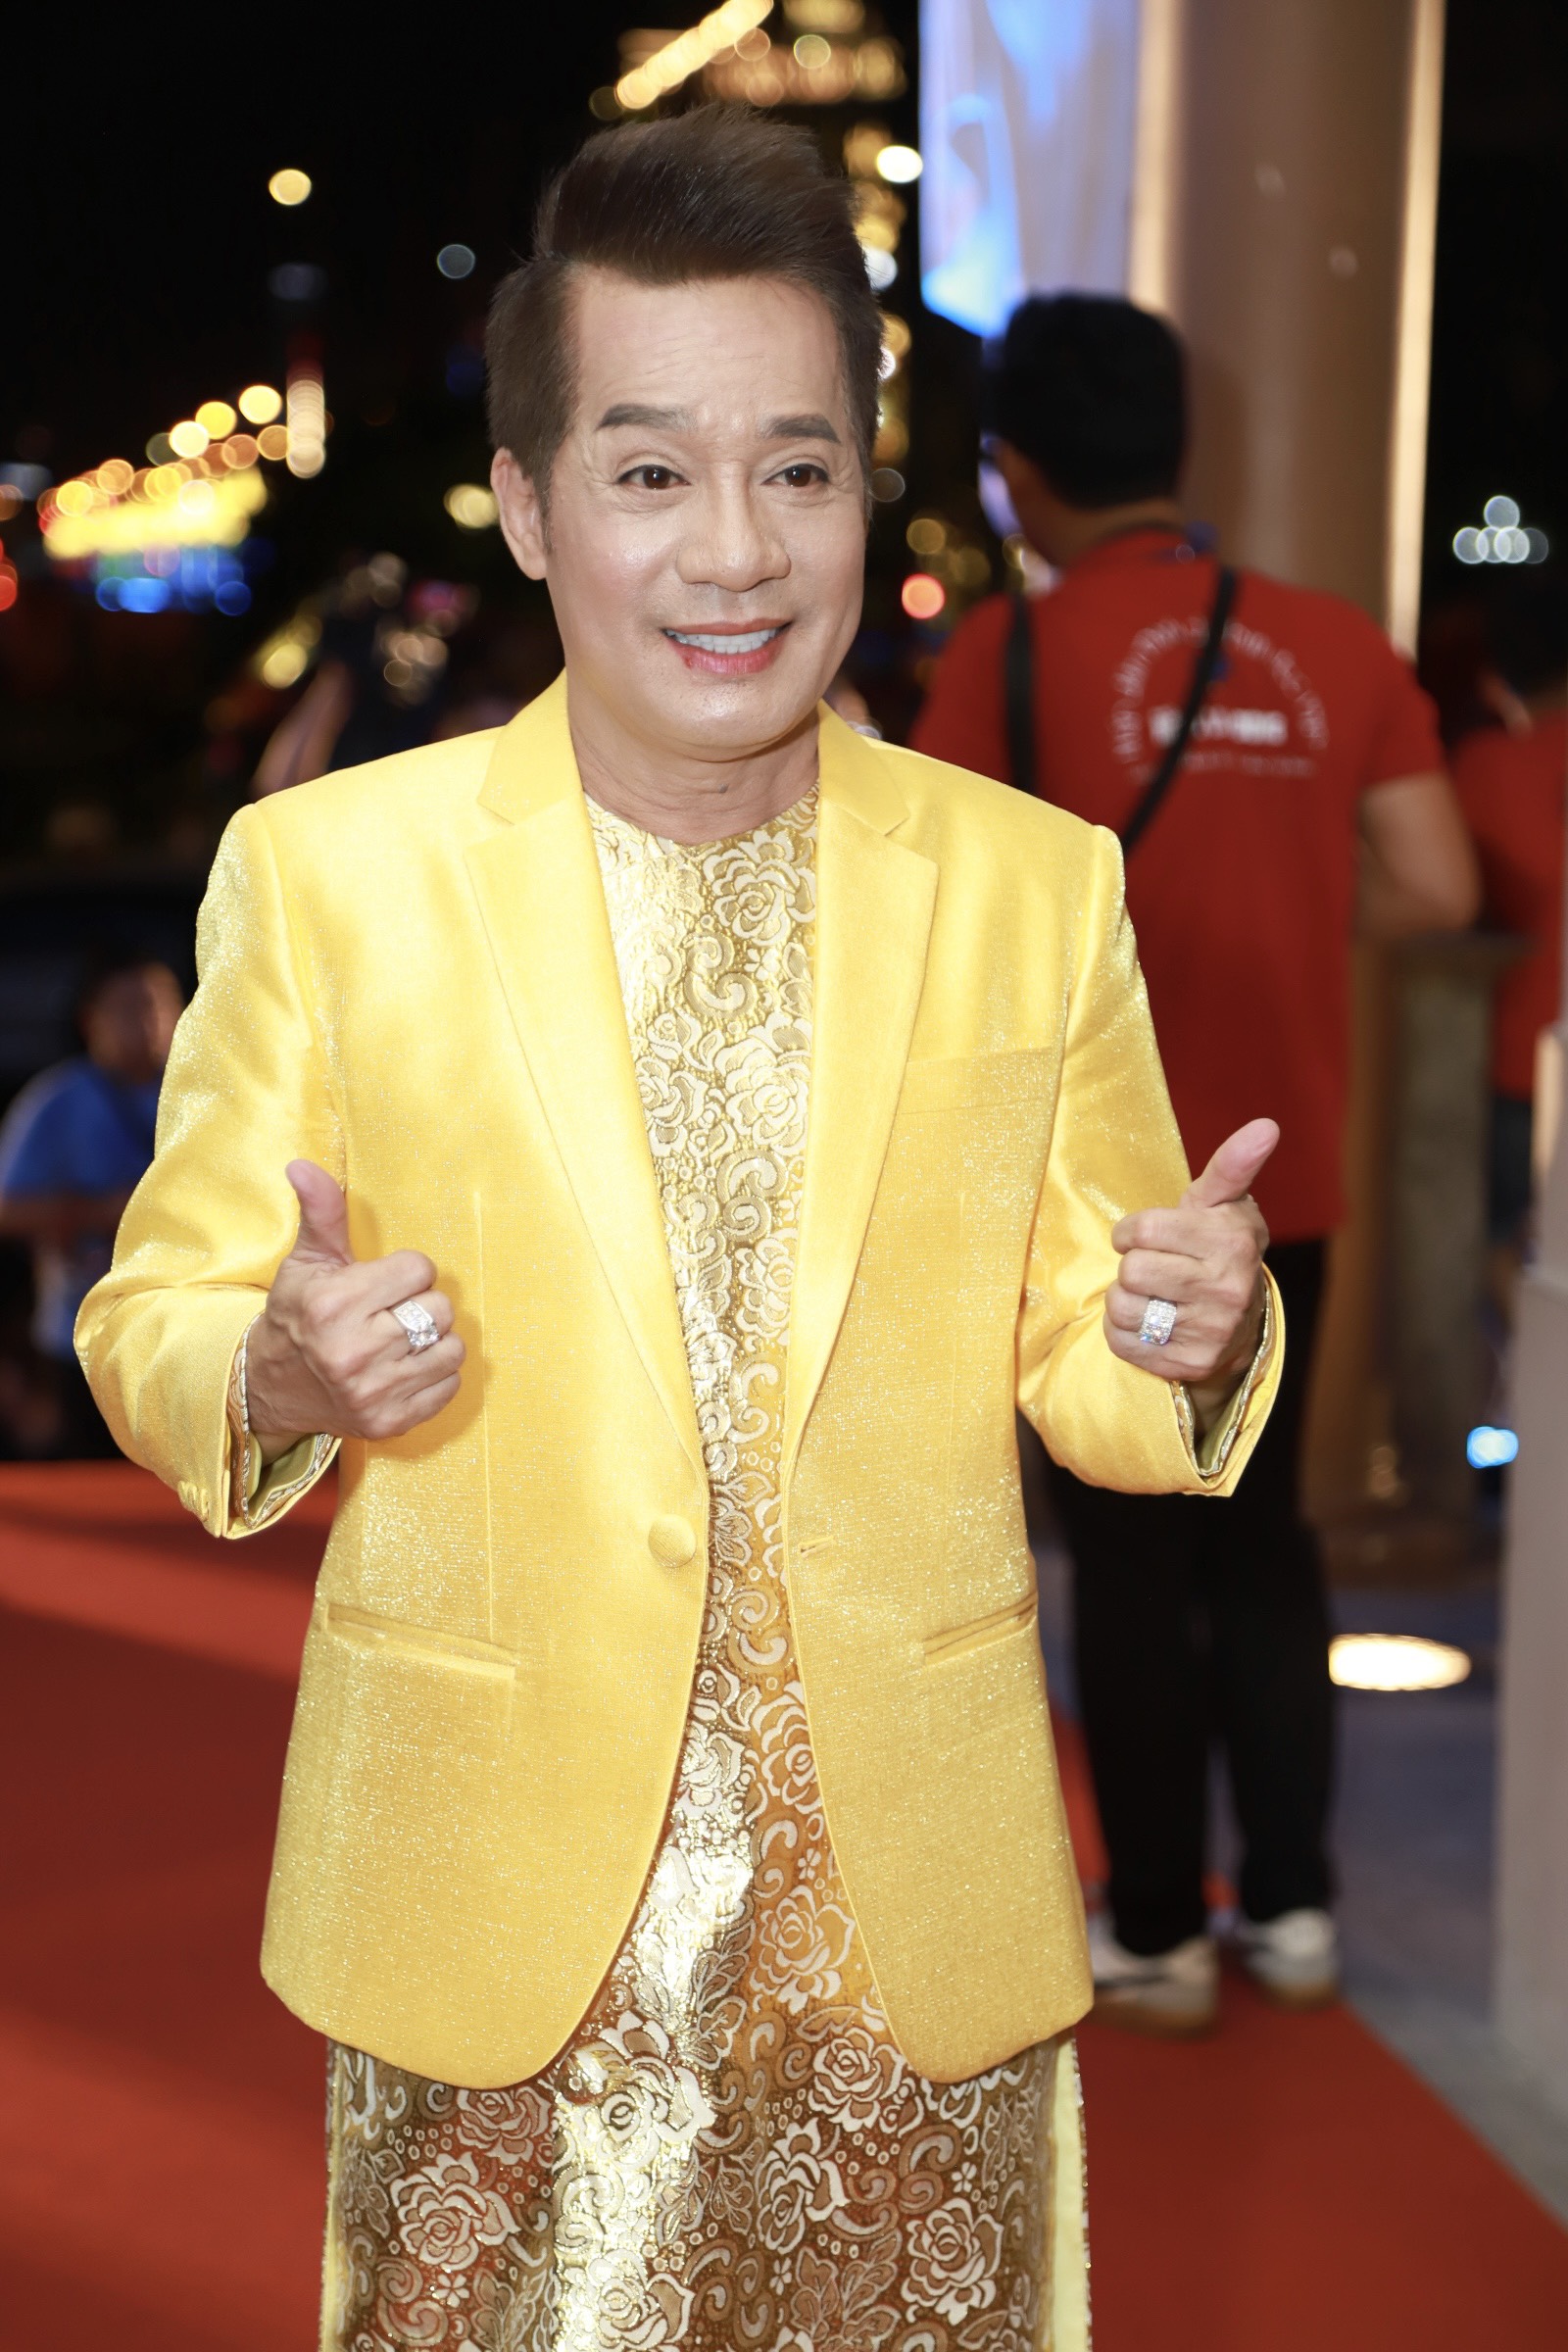 NSƯT Minh Nhí "nổi bần bật" với trang phục cả "cây vàng" từ trên xuống dưới